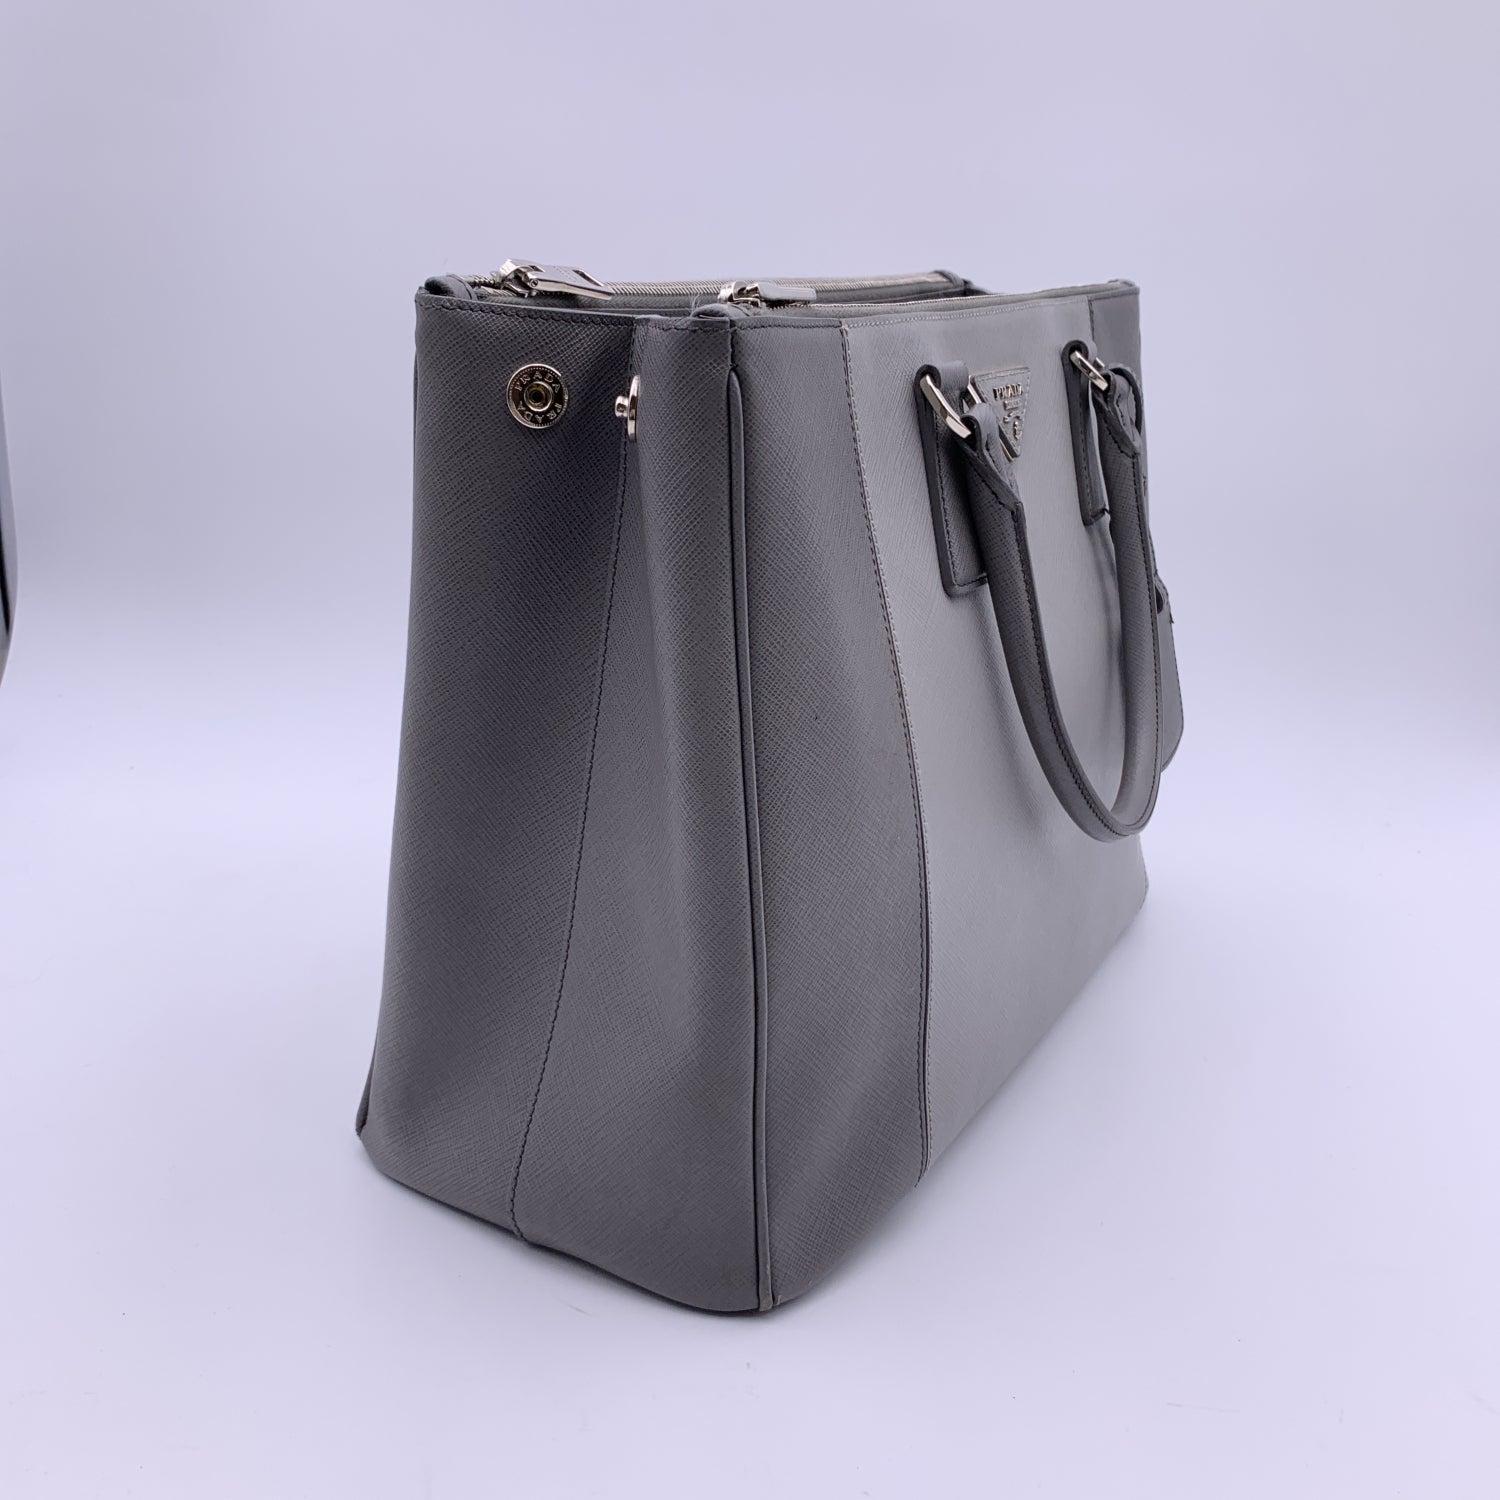 Prada Grey Bicolor Saffiano Leather Galleria Tote Satchel Bag 2